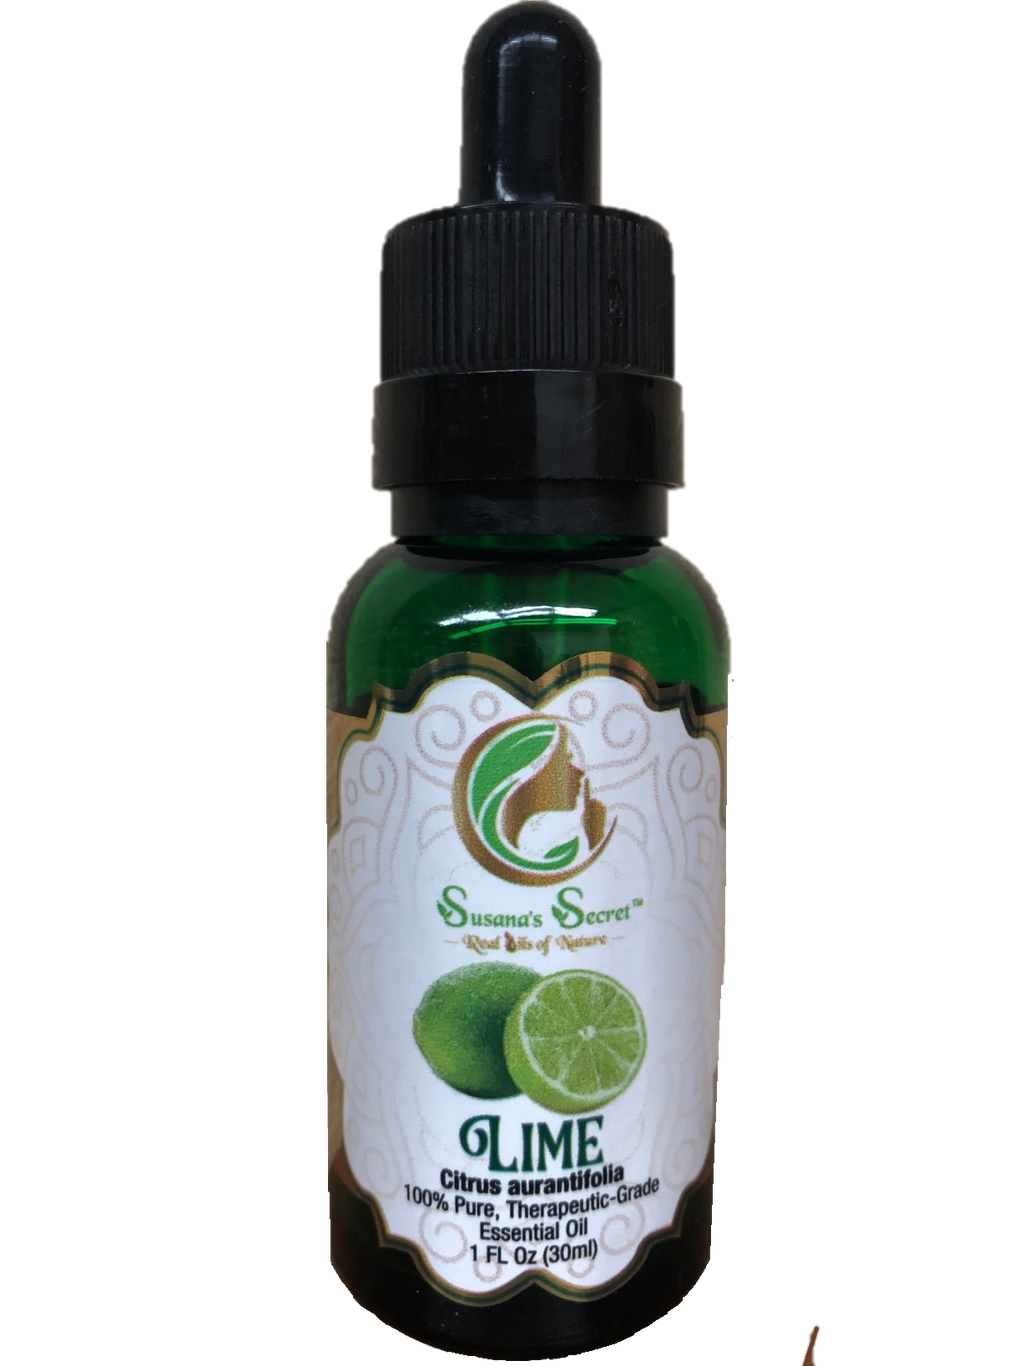 LIME Cold Presed Oil- 100% PURE, Therapeutic-Grade, 1 FL Oz/30 ml- Glass bottle w/ dropper pipette